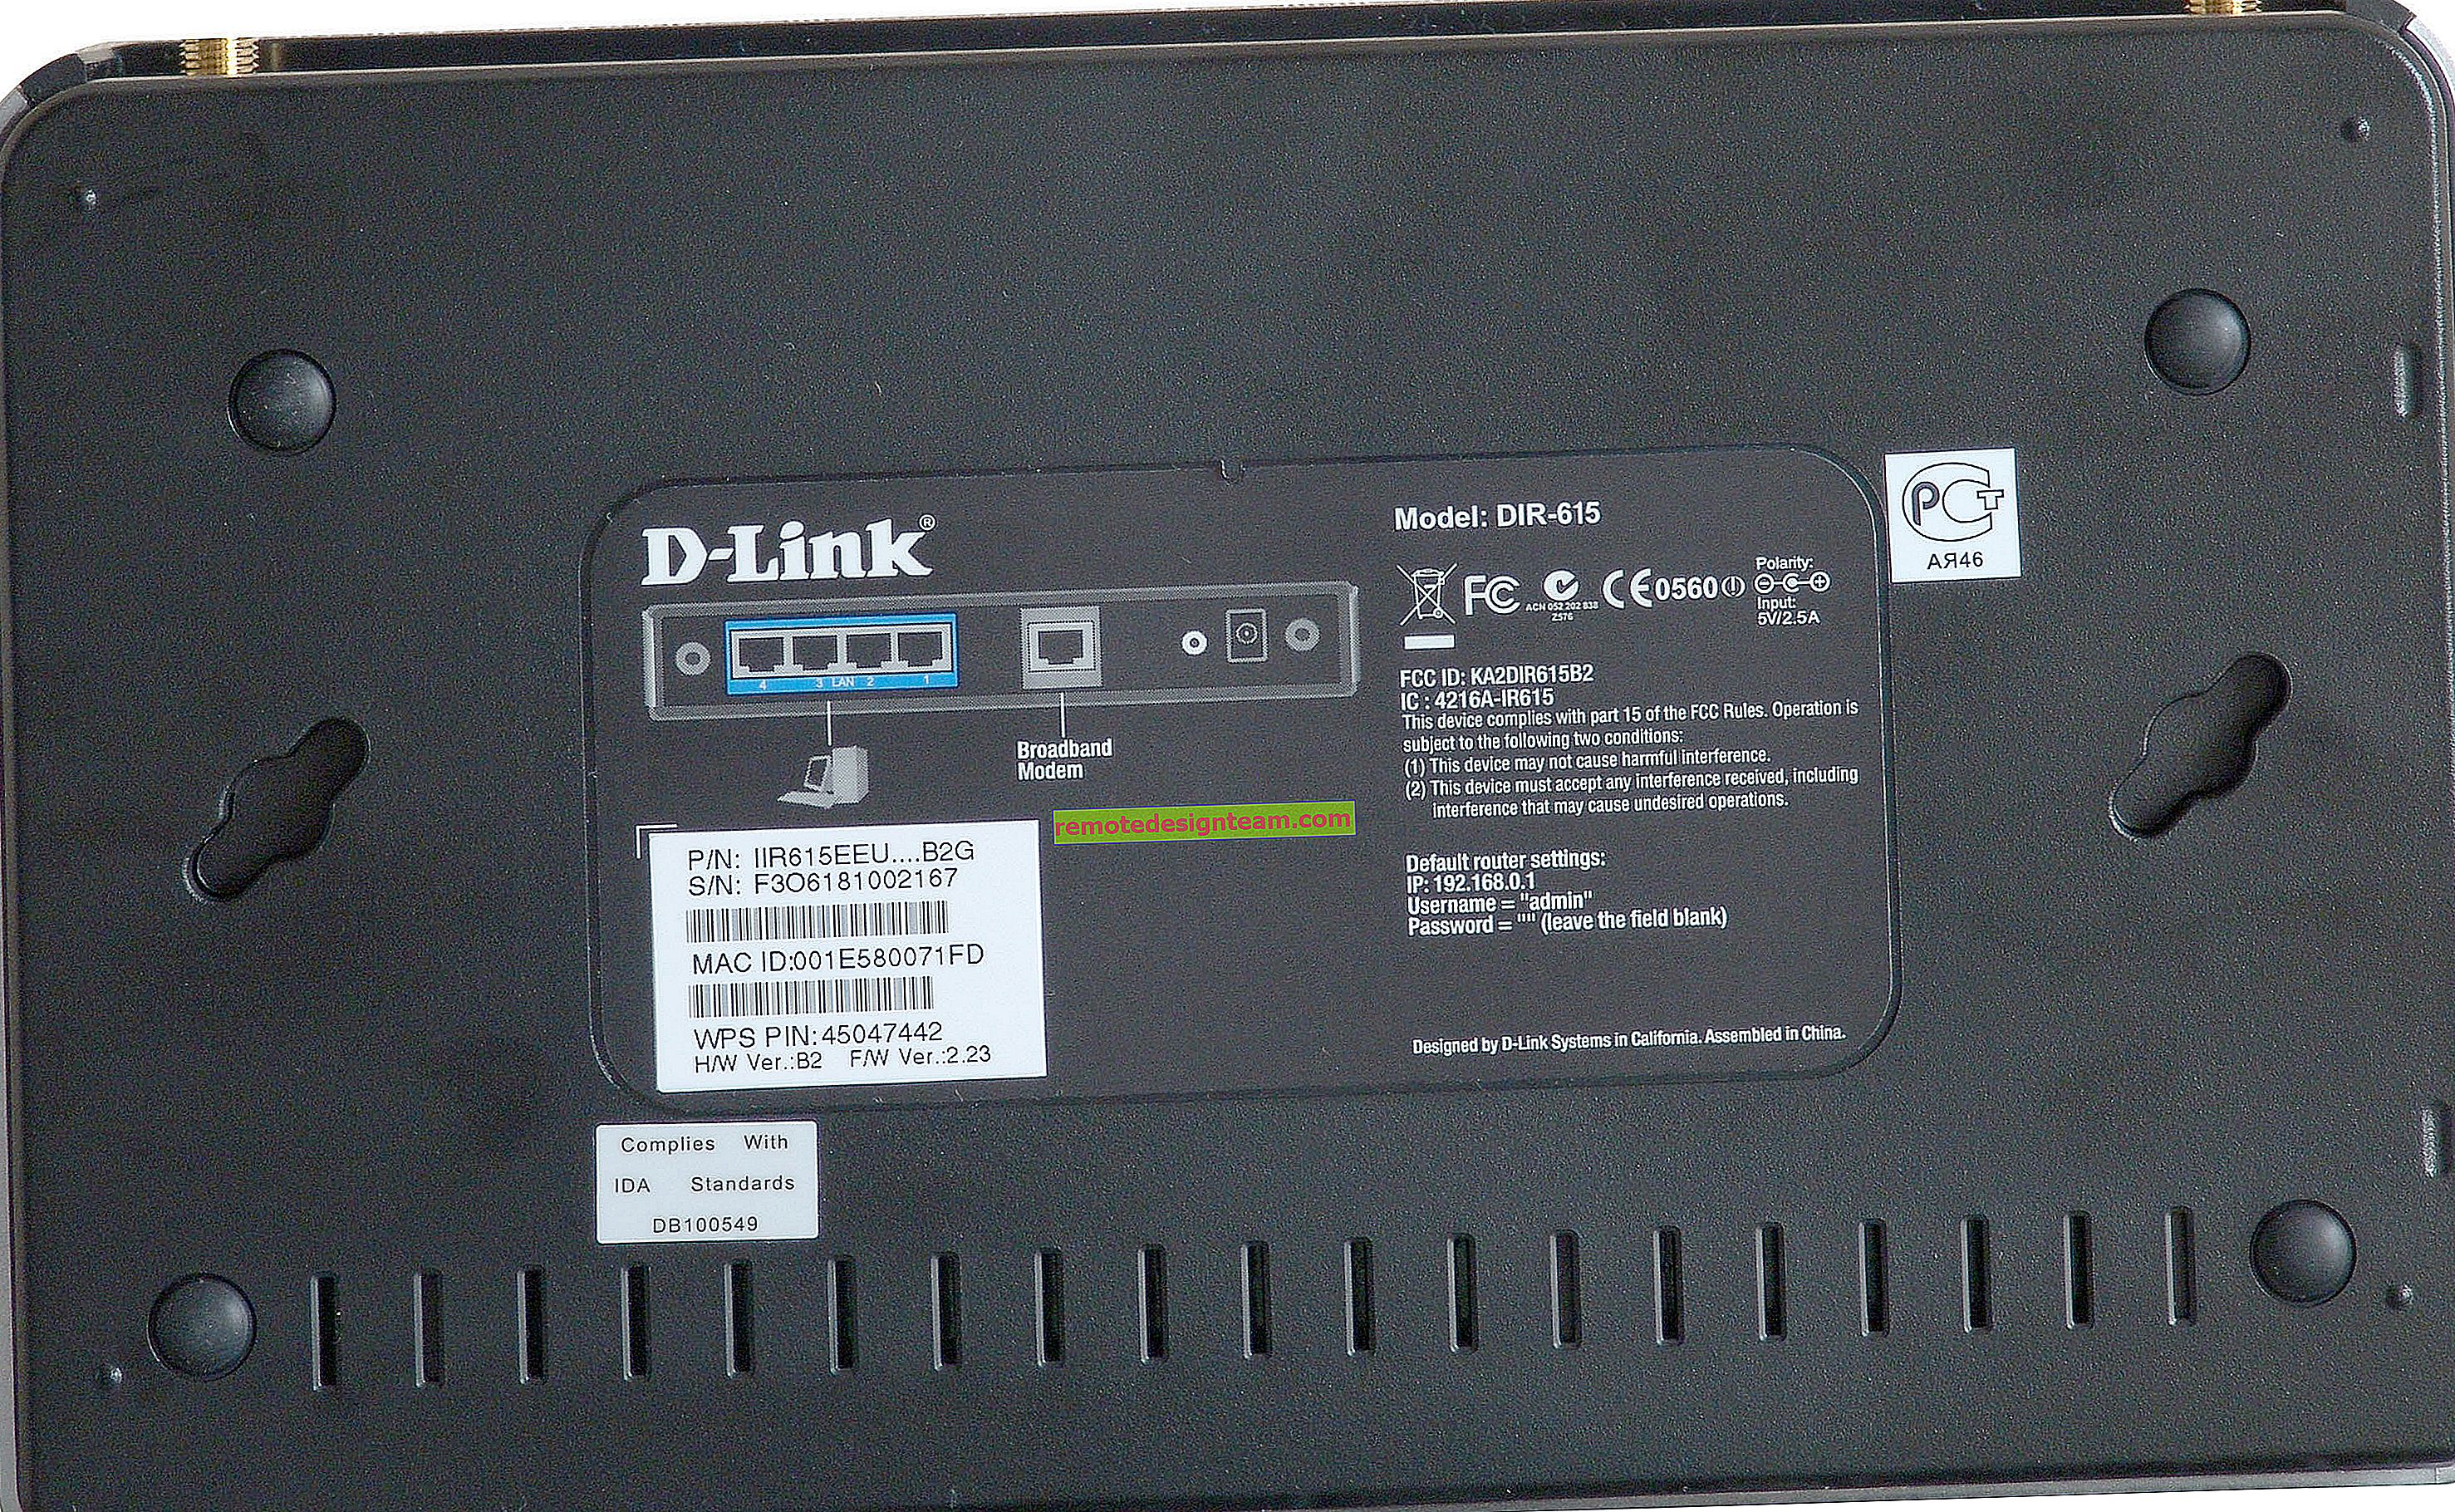 البرنامج الثابت لجهاز التوجيه D-Link DIR-300A. تحديث البرنامج بطريقتين